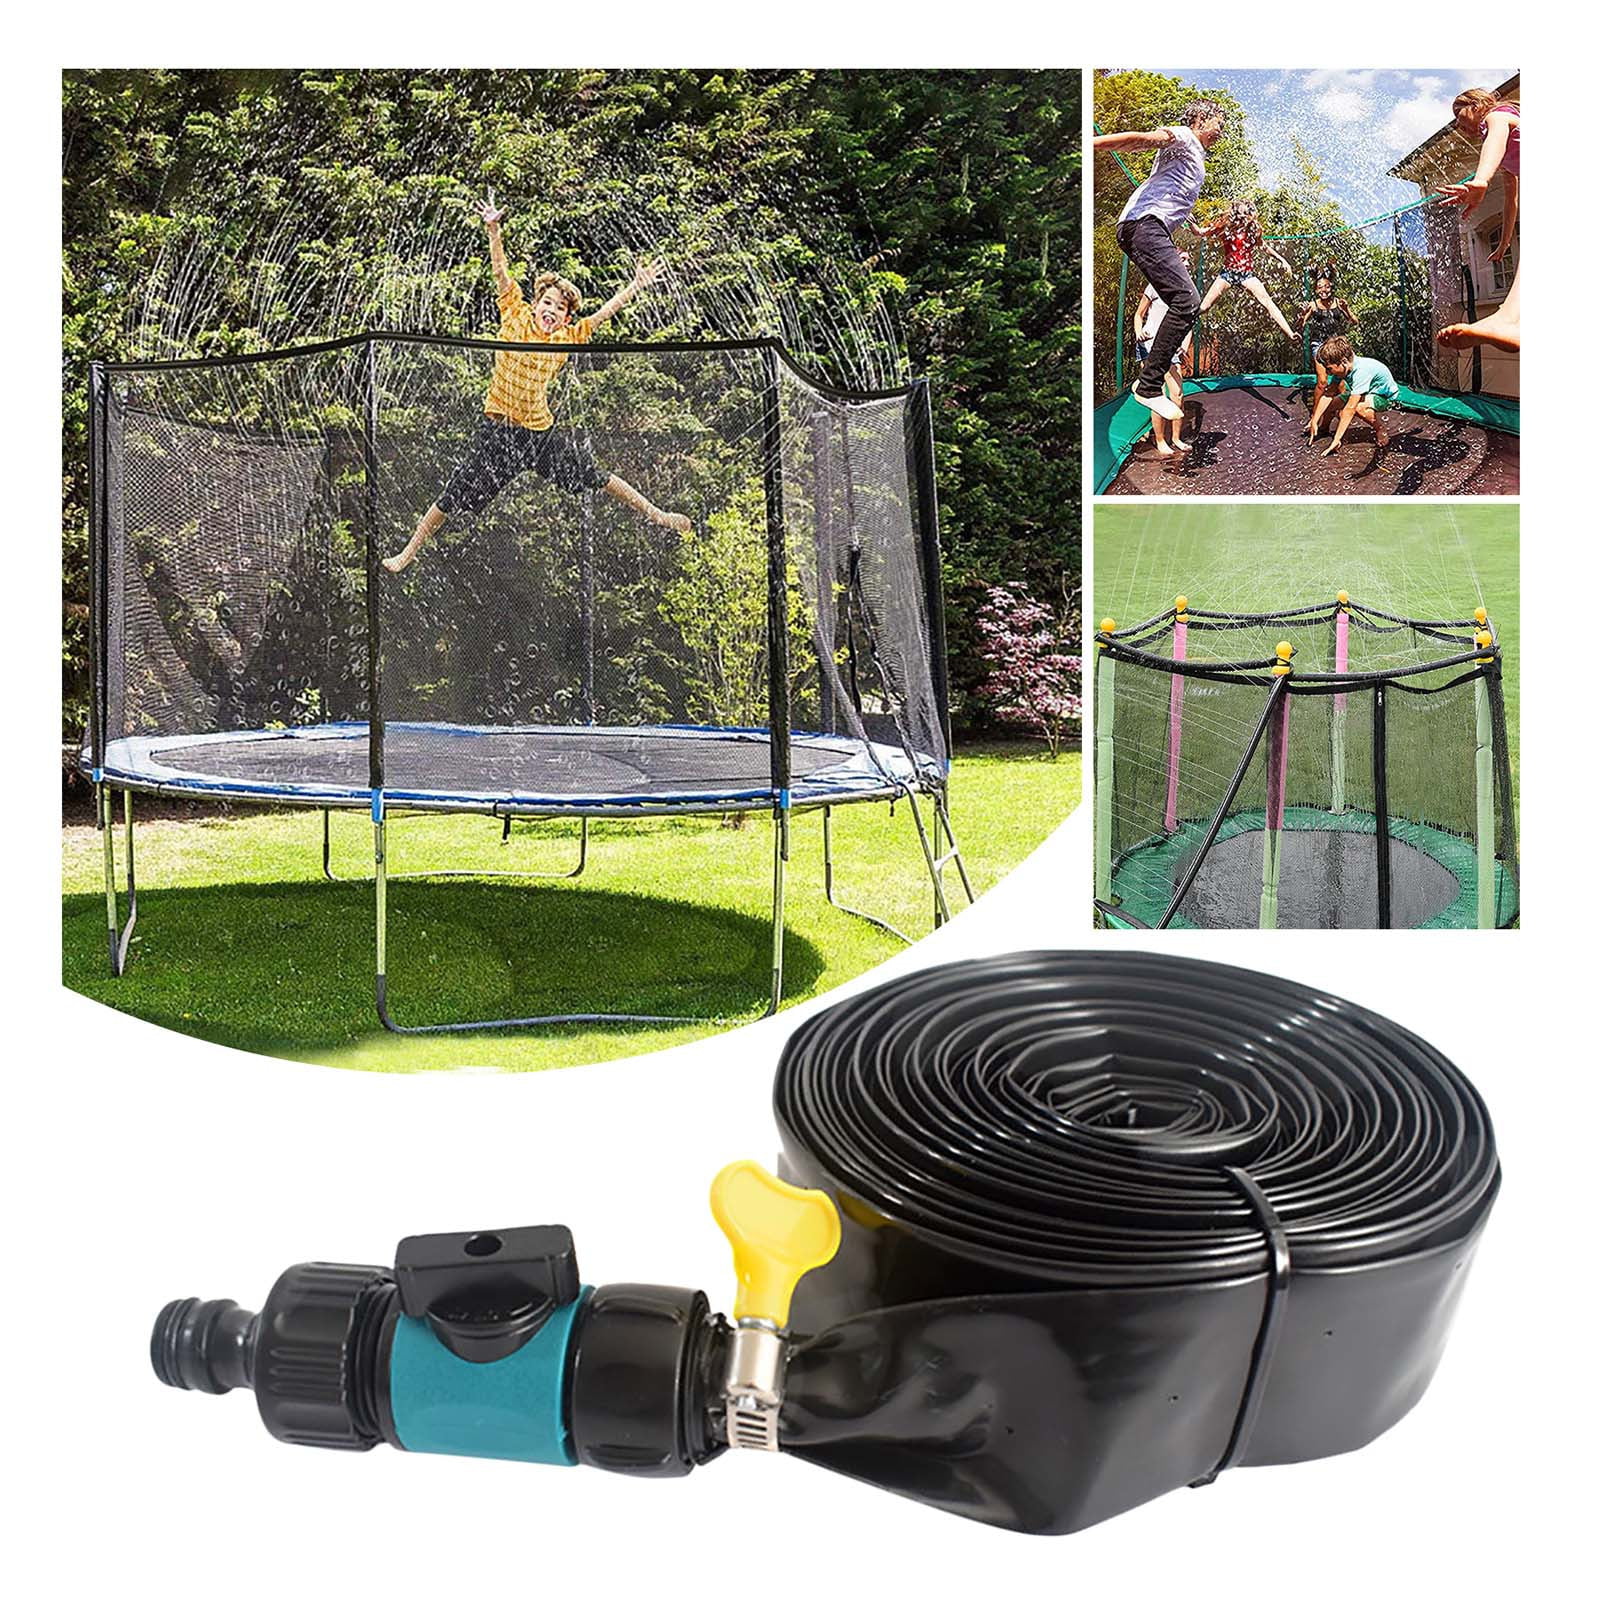 Bzoosio Trampoline Sprinkler Outdoor Water Sprinkler For Kid Summer Trampoline Accessory